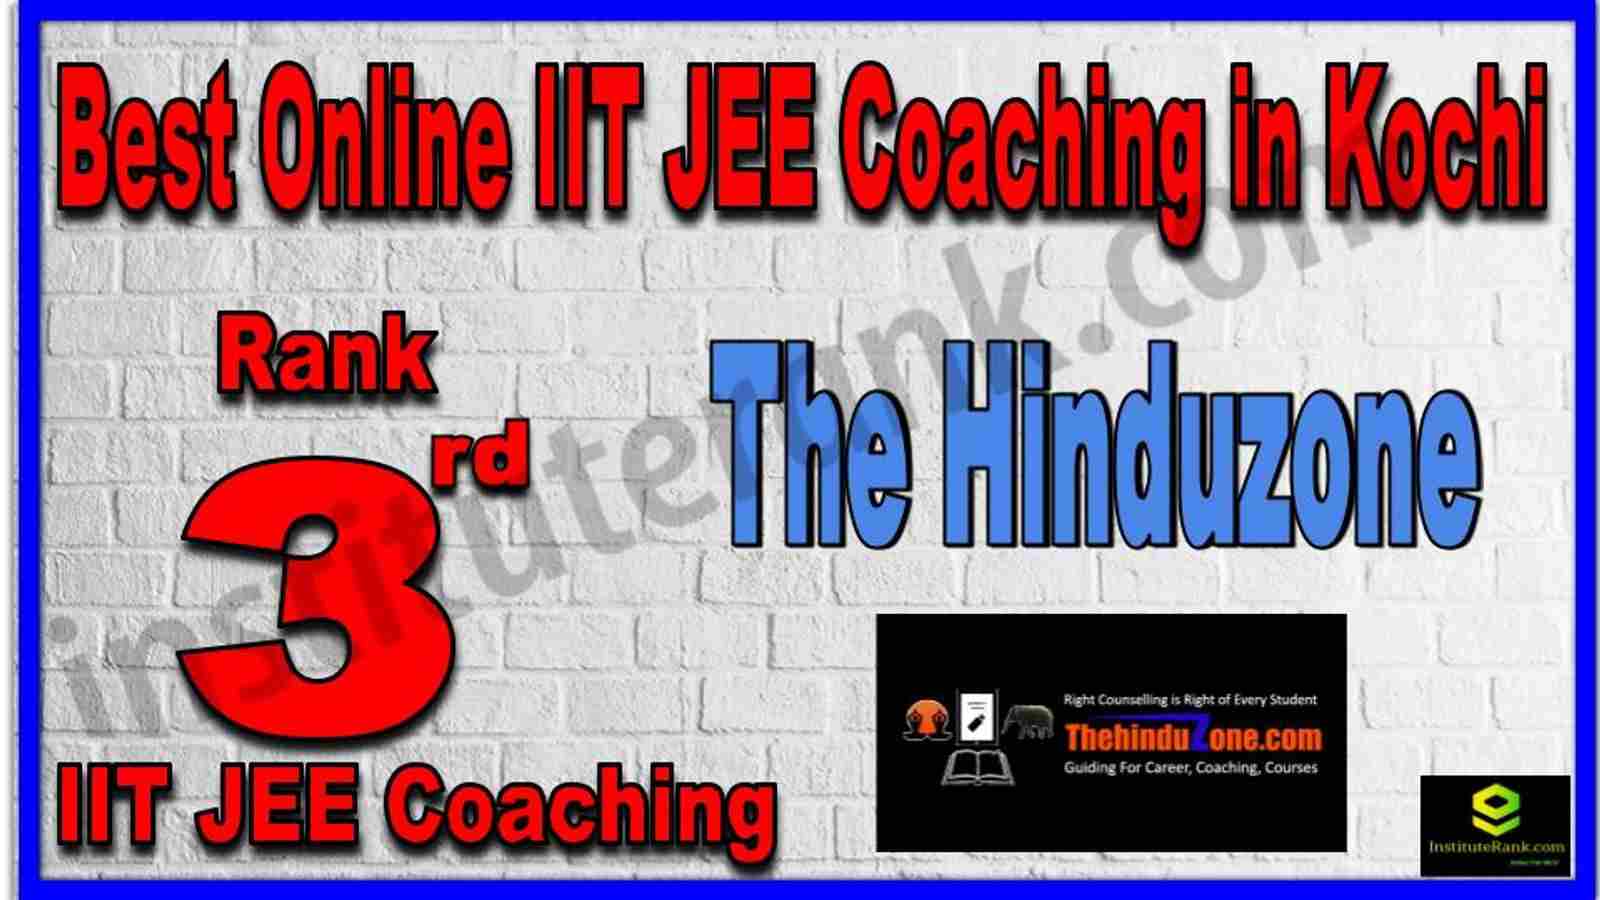 Rank 3rd Best Online IIT JEE Coaching in Kochi